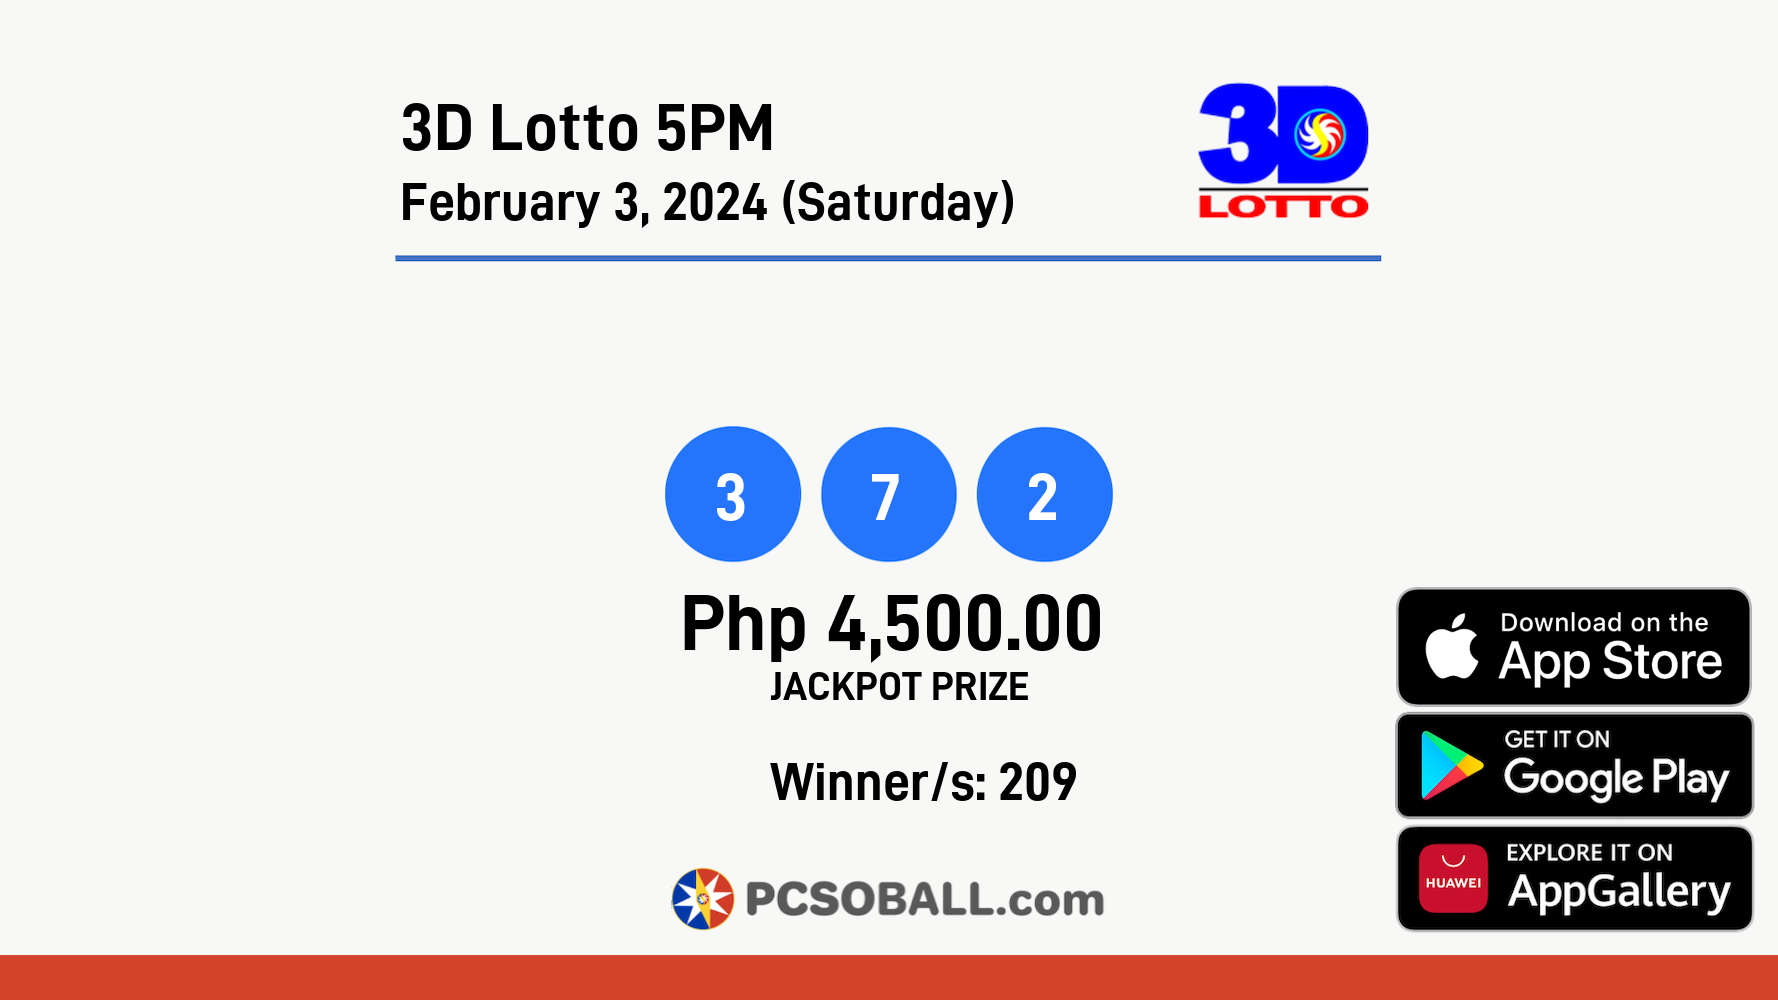 3D Lotto 5PM February 3, 2024 (Saturday) Result